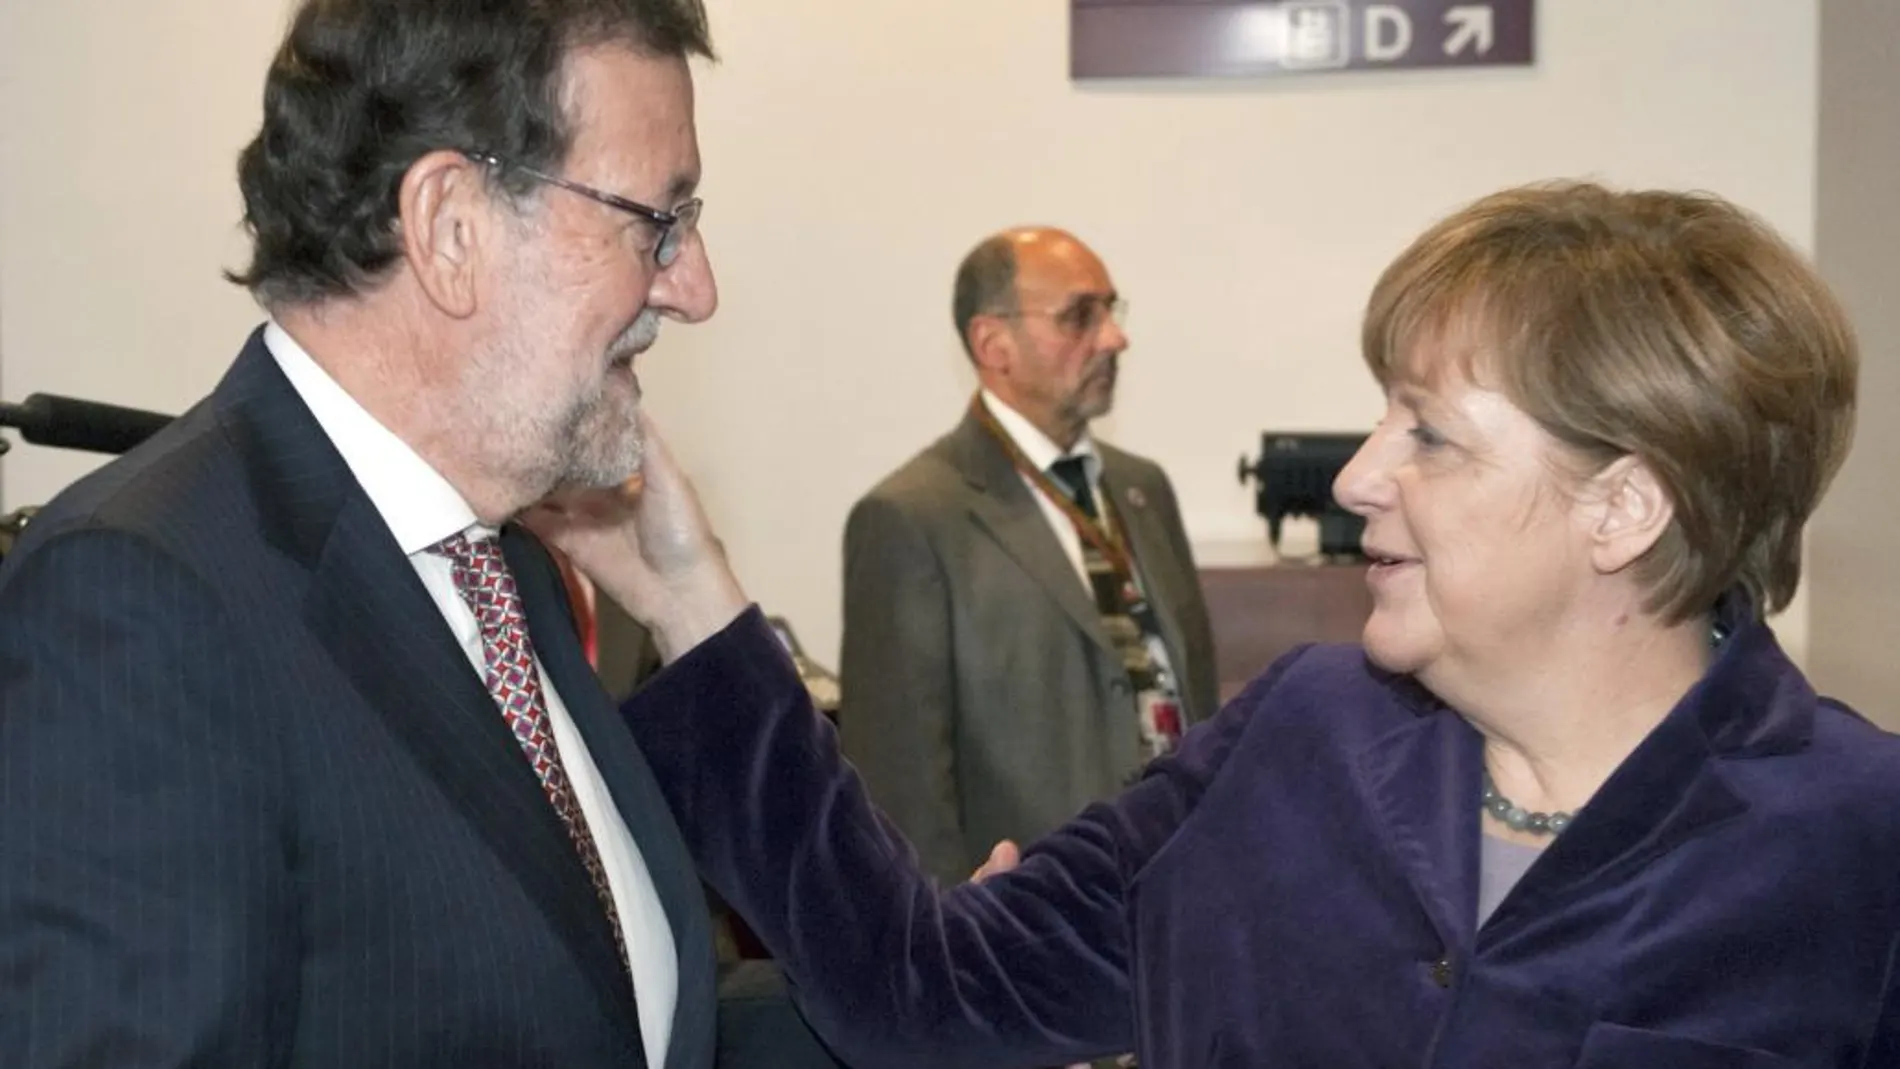 La canciller alemana Angela Merkel toca a Mariano Rajoy en la cara, donde recibió el puñetazo.